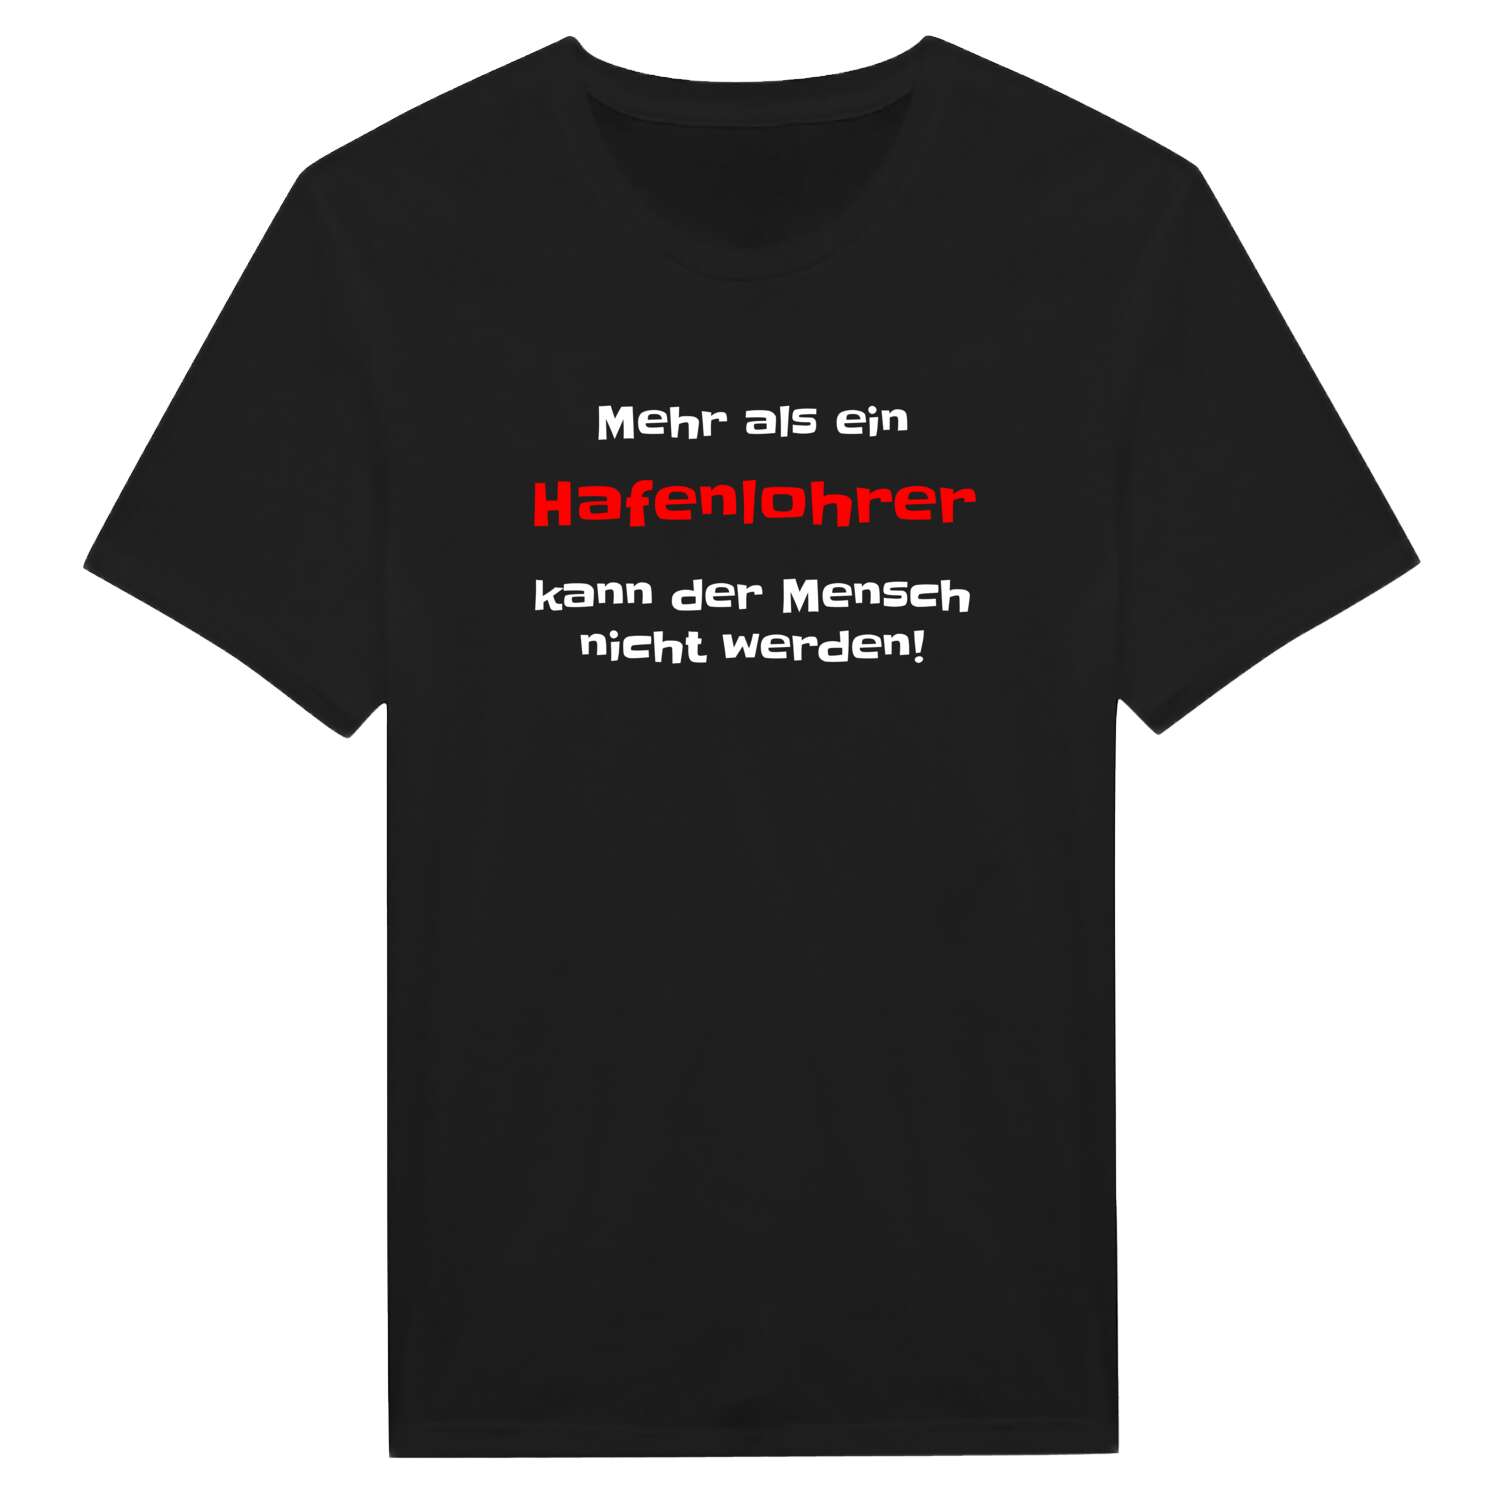 Hafenlohr T-Shirt »Mehr als ein«